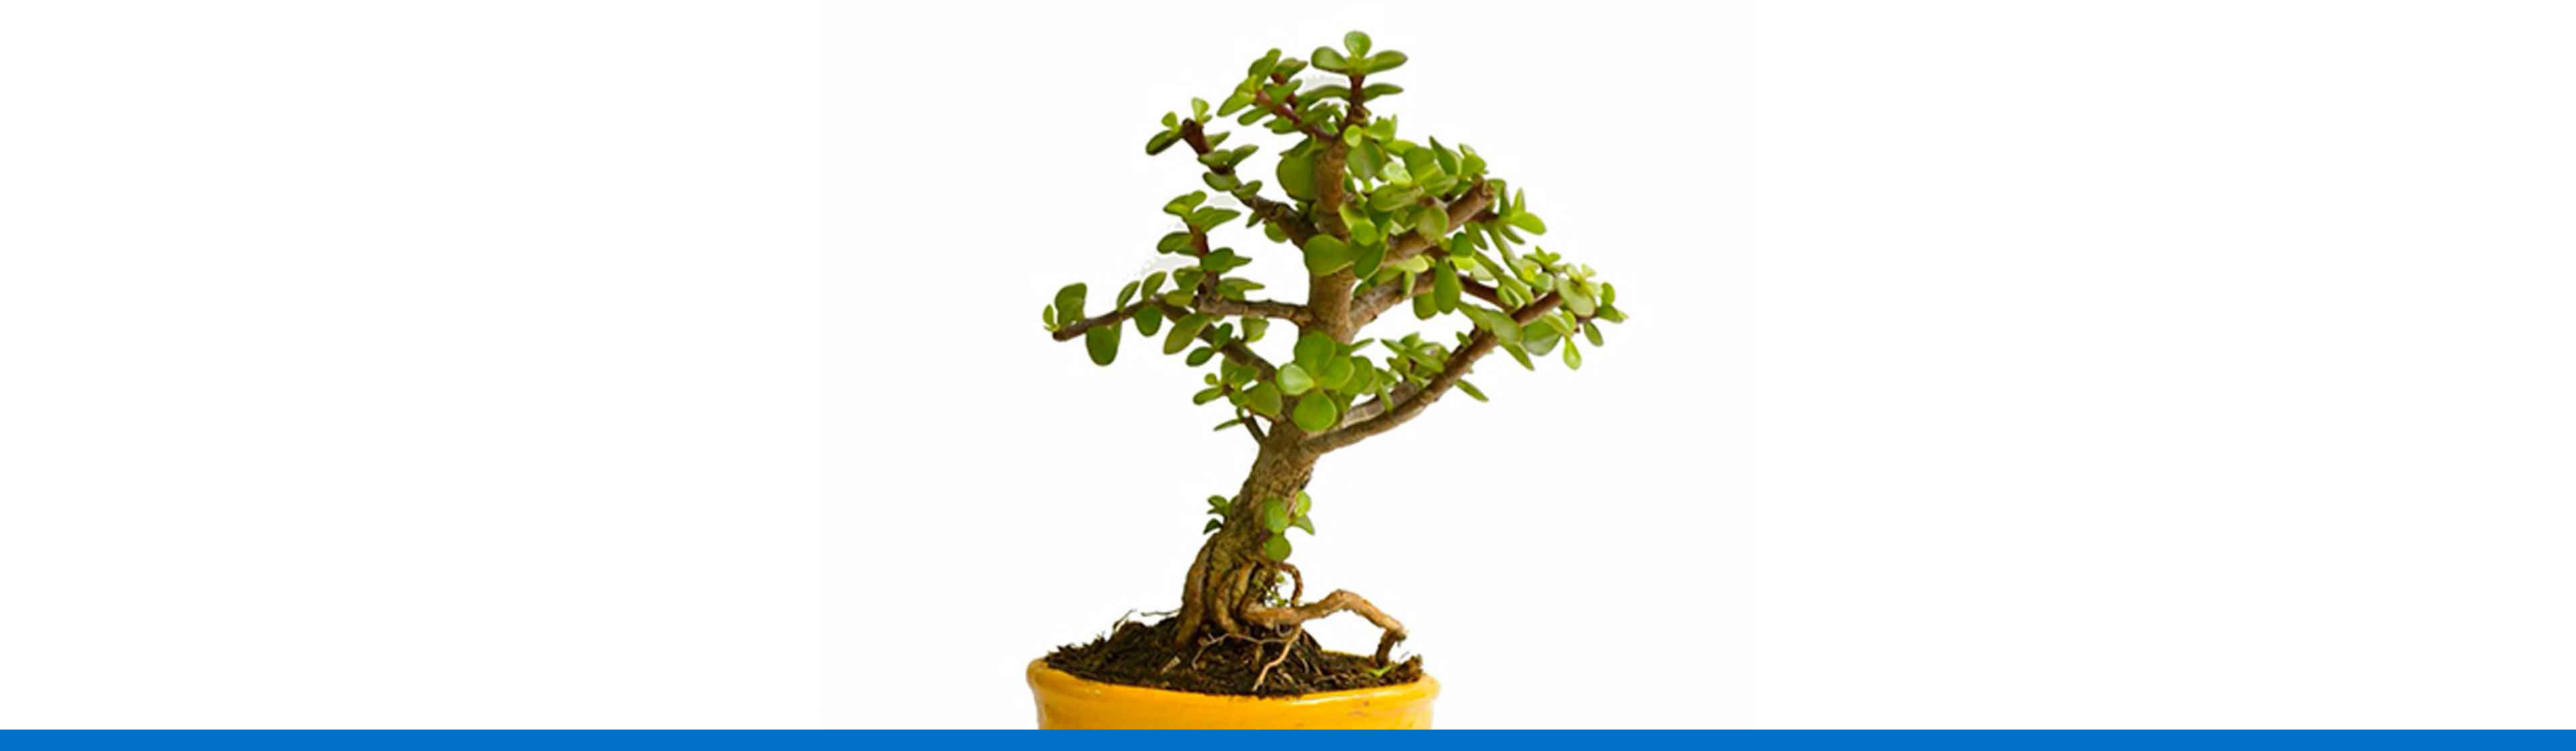 ¿Cómo hacer y cuidar un bonsai?